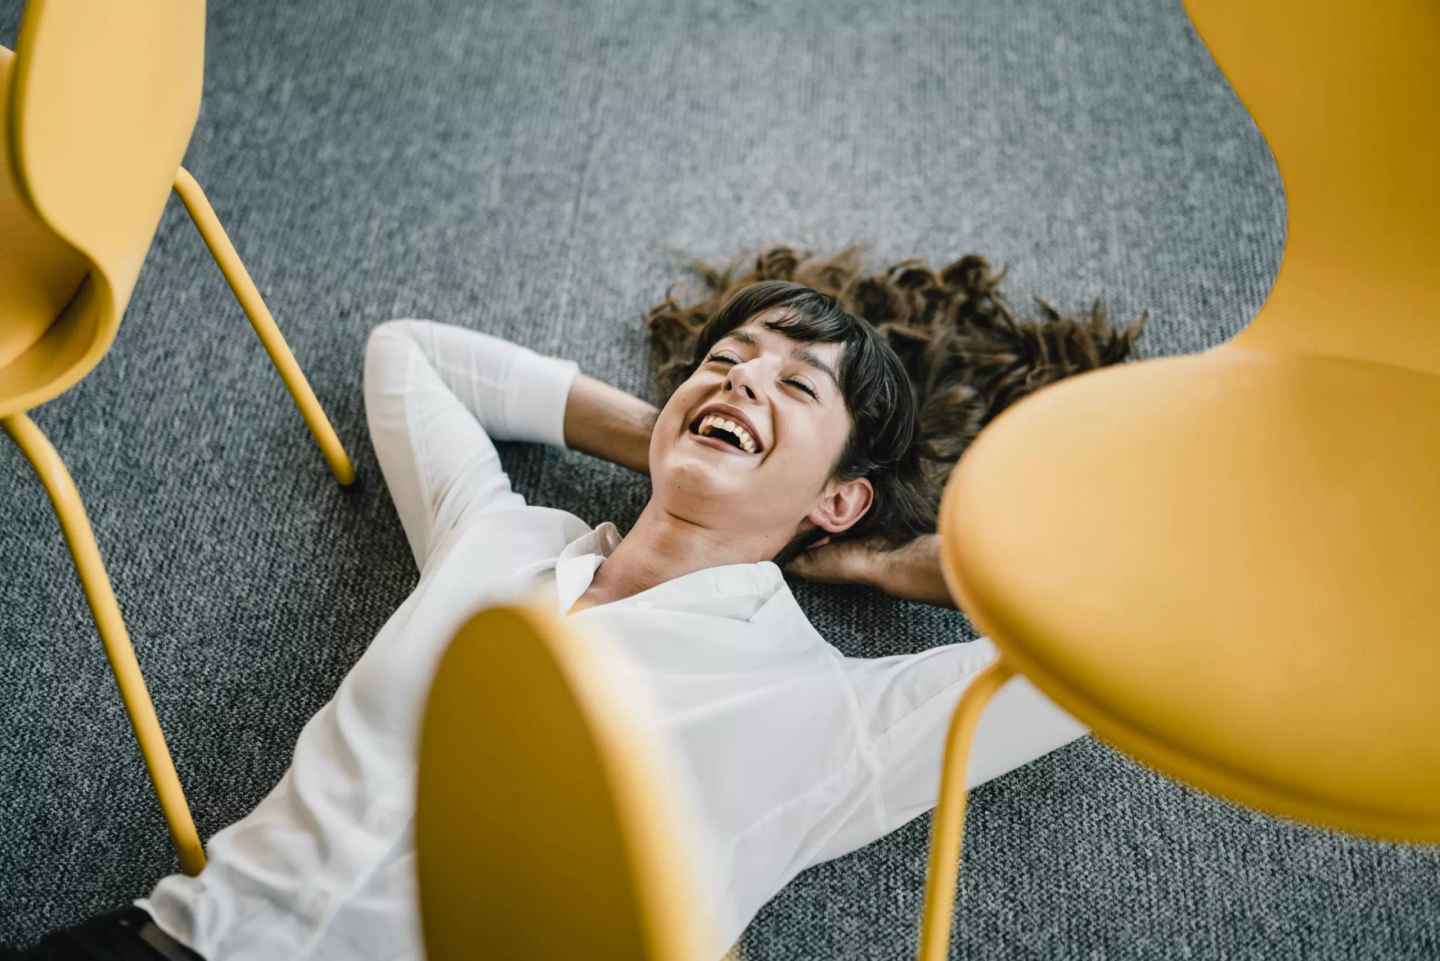 En person ligger på golvet i ett konferensrum och skrattar avslappnat.